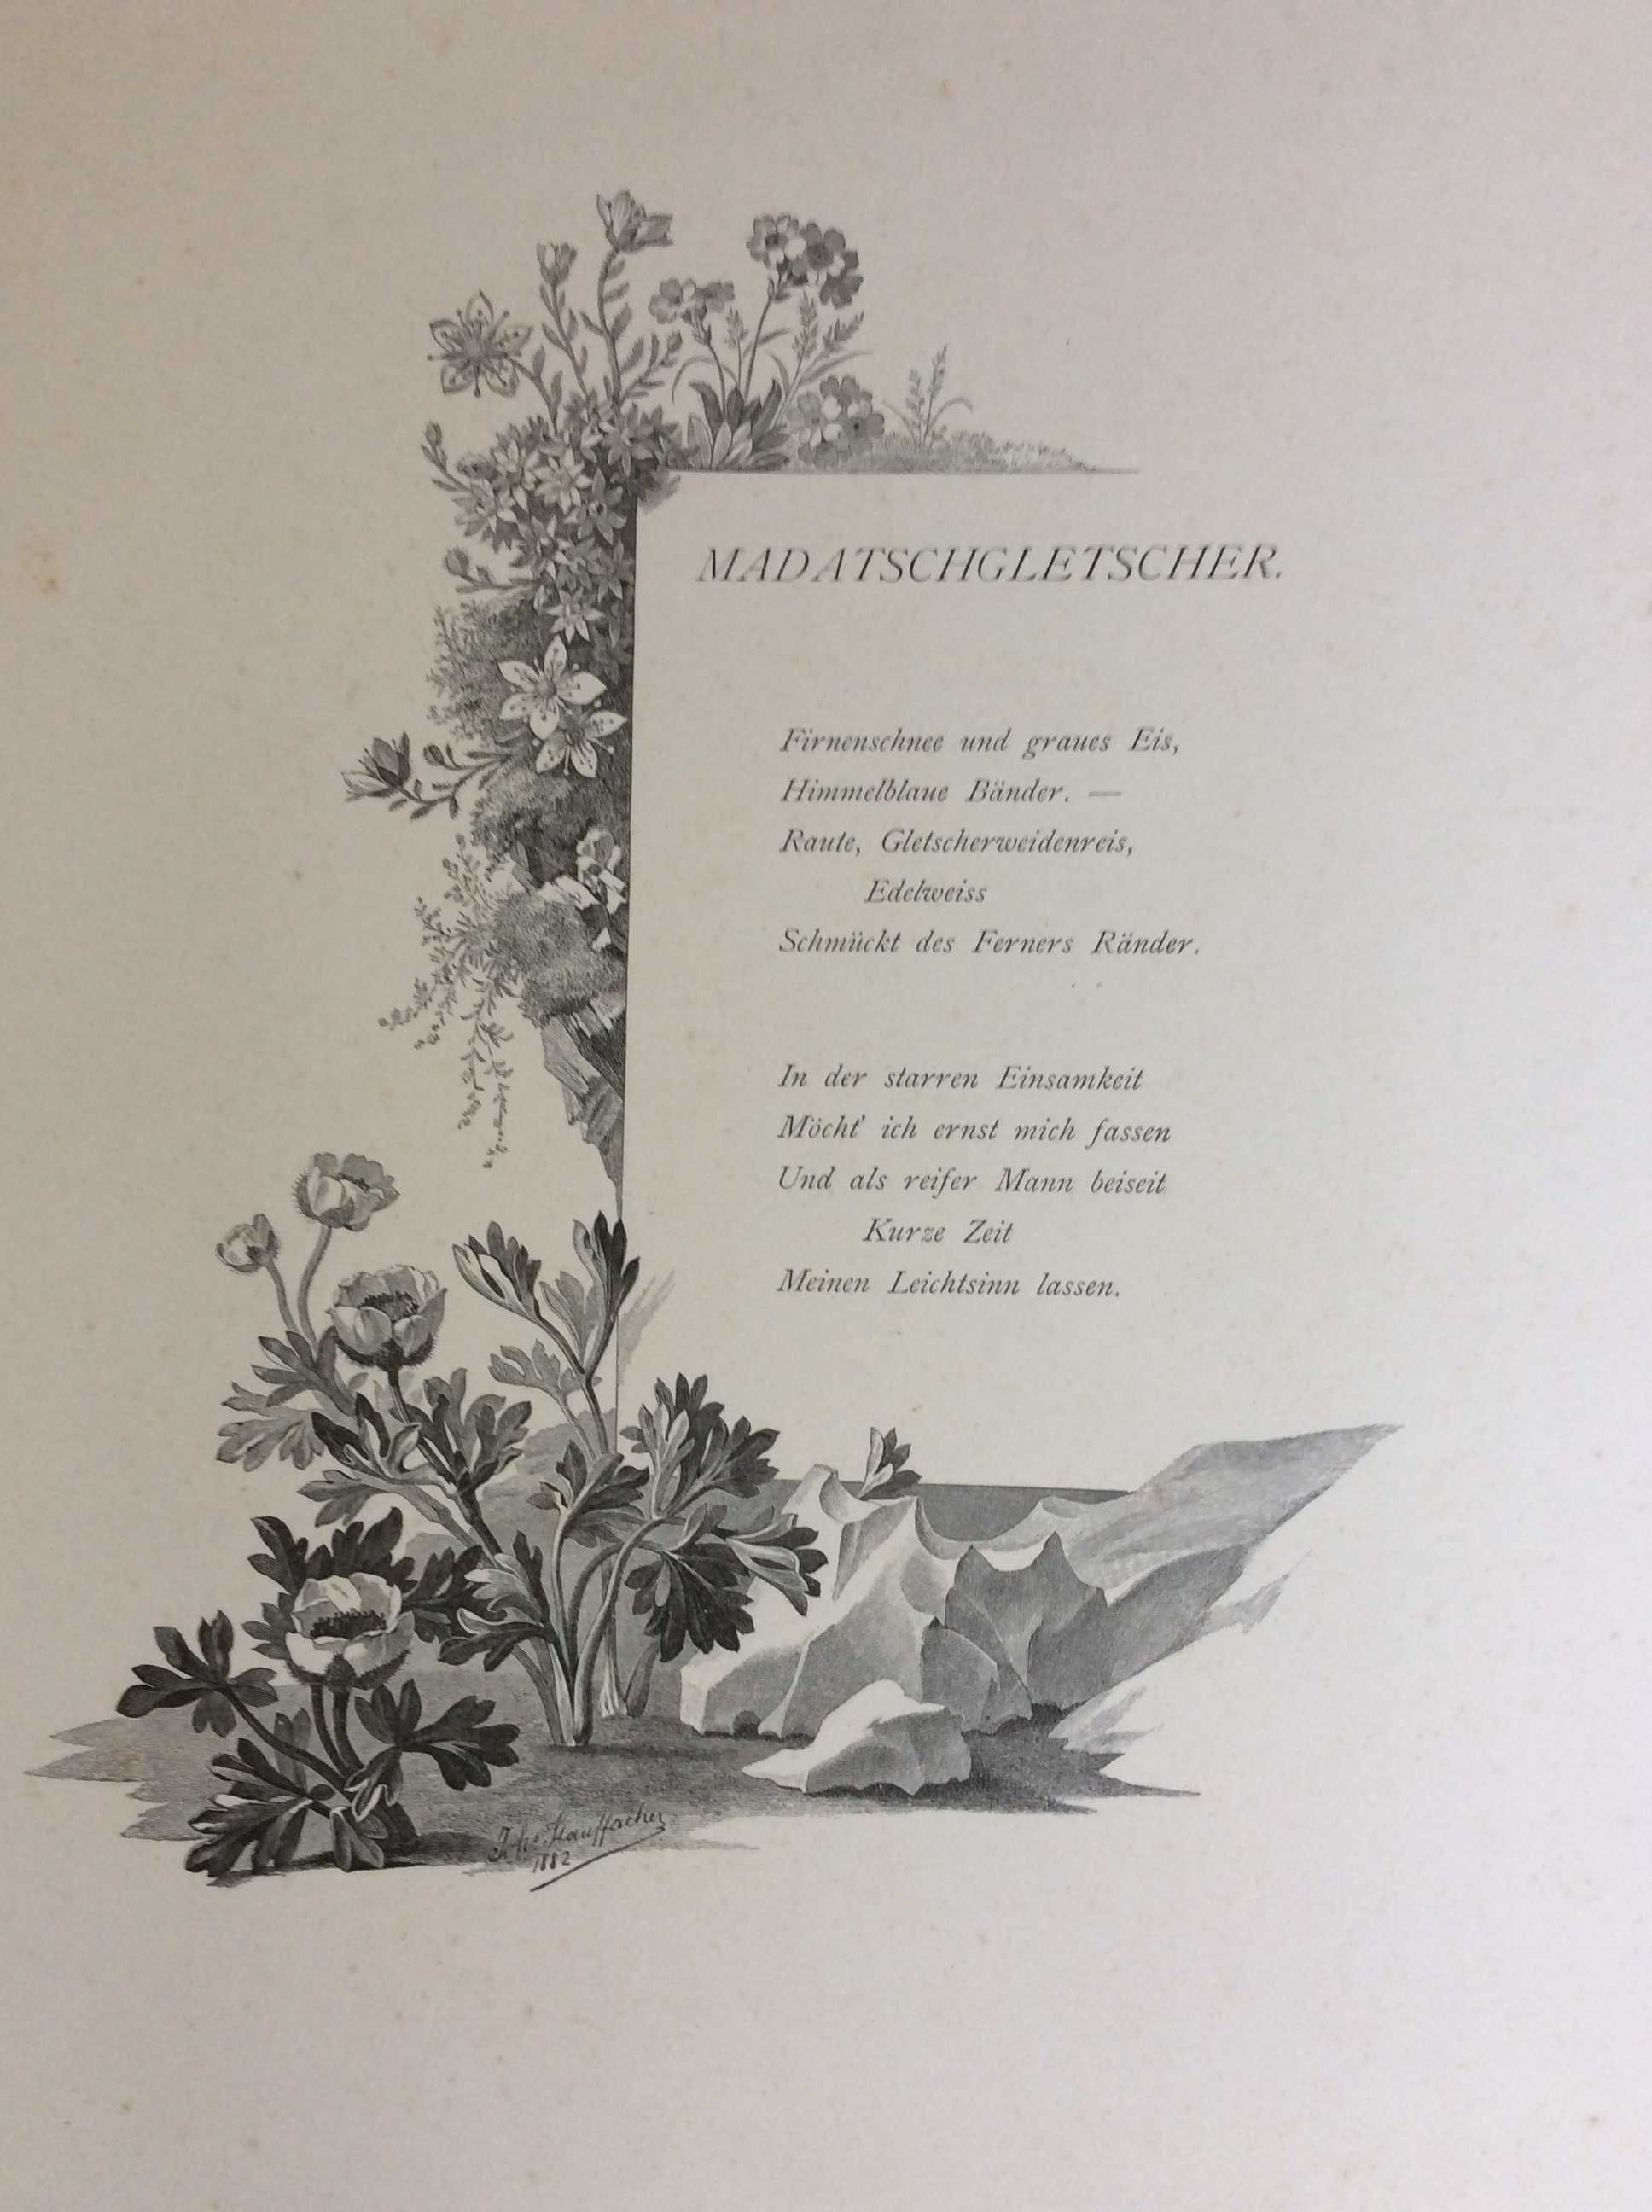 Poesia e botânica, dedicado aos Alpes. Ano 1882. Raro. Lote 6